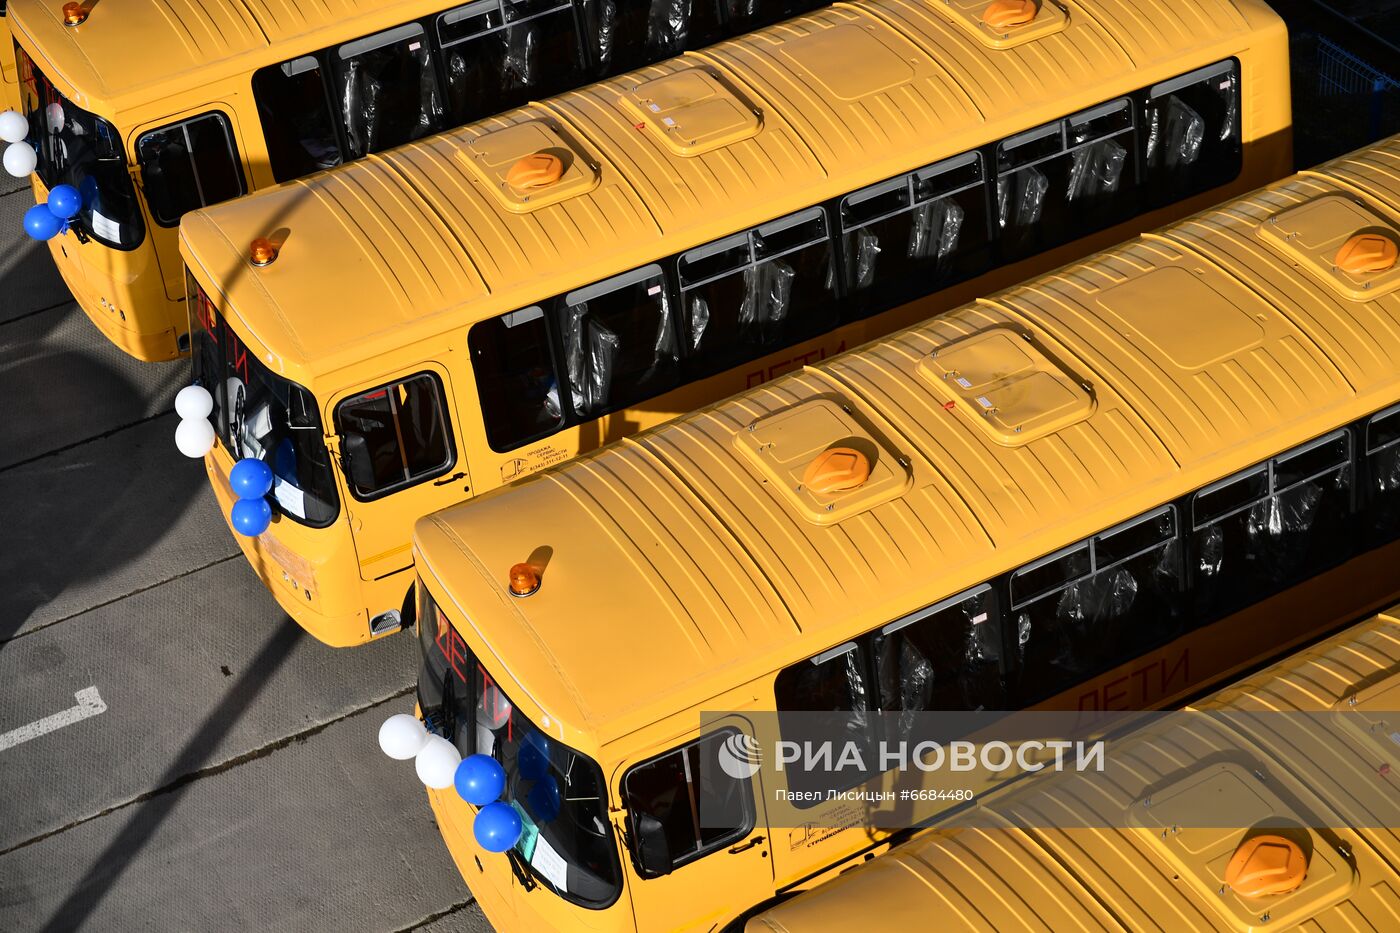 Передача школьных автобусов правительством Екатеринбурга муниципалитетам Свердловской области